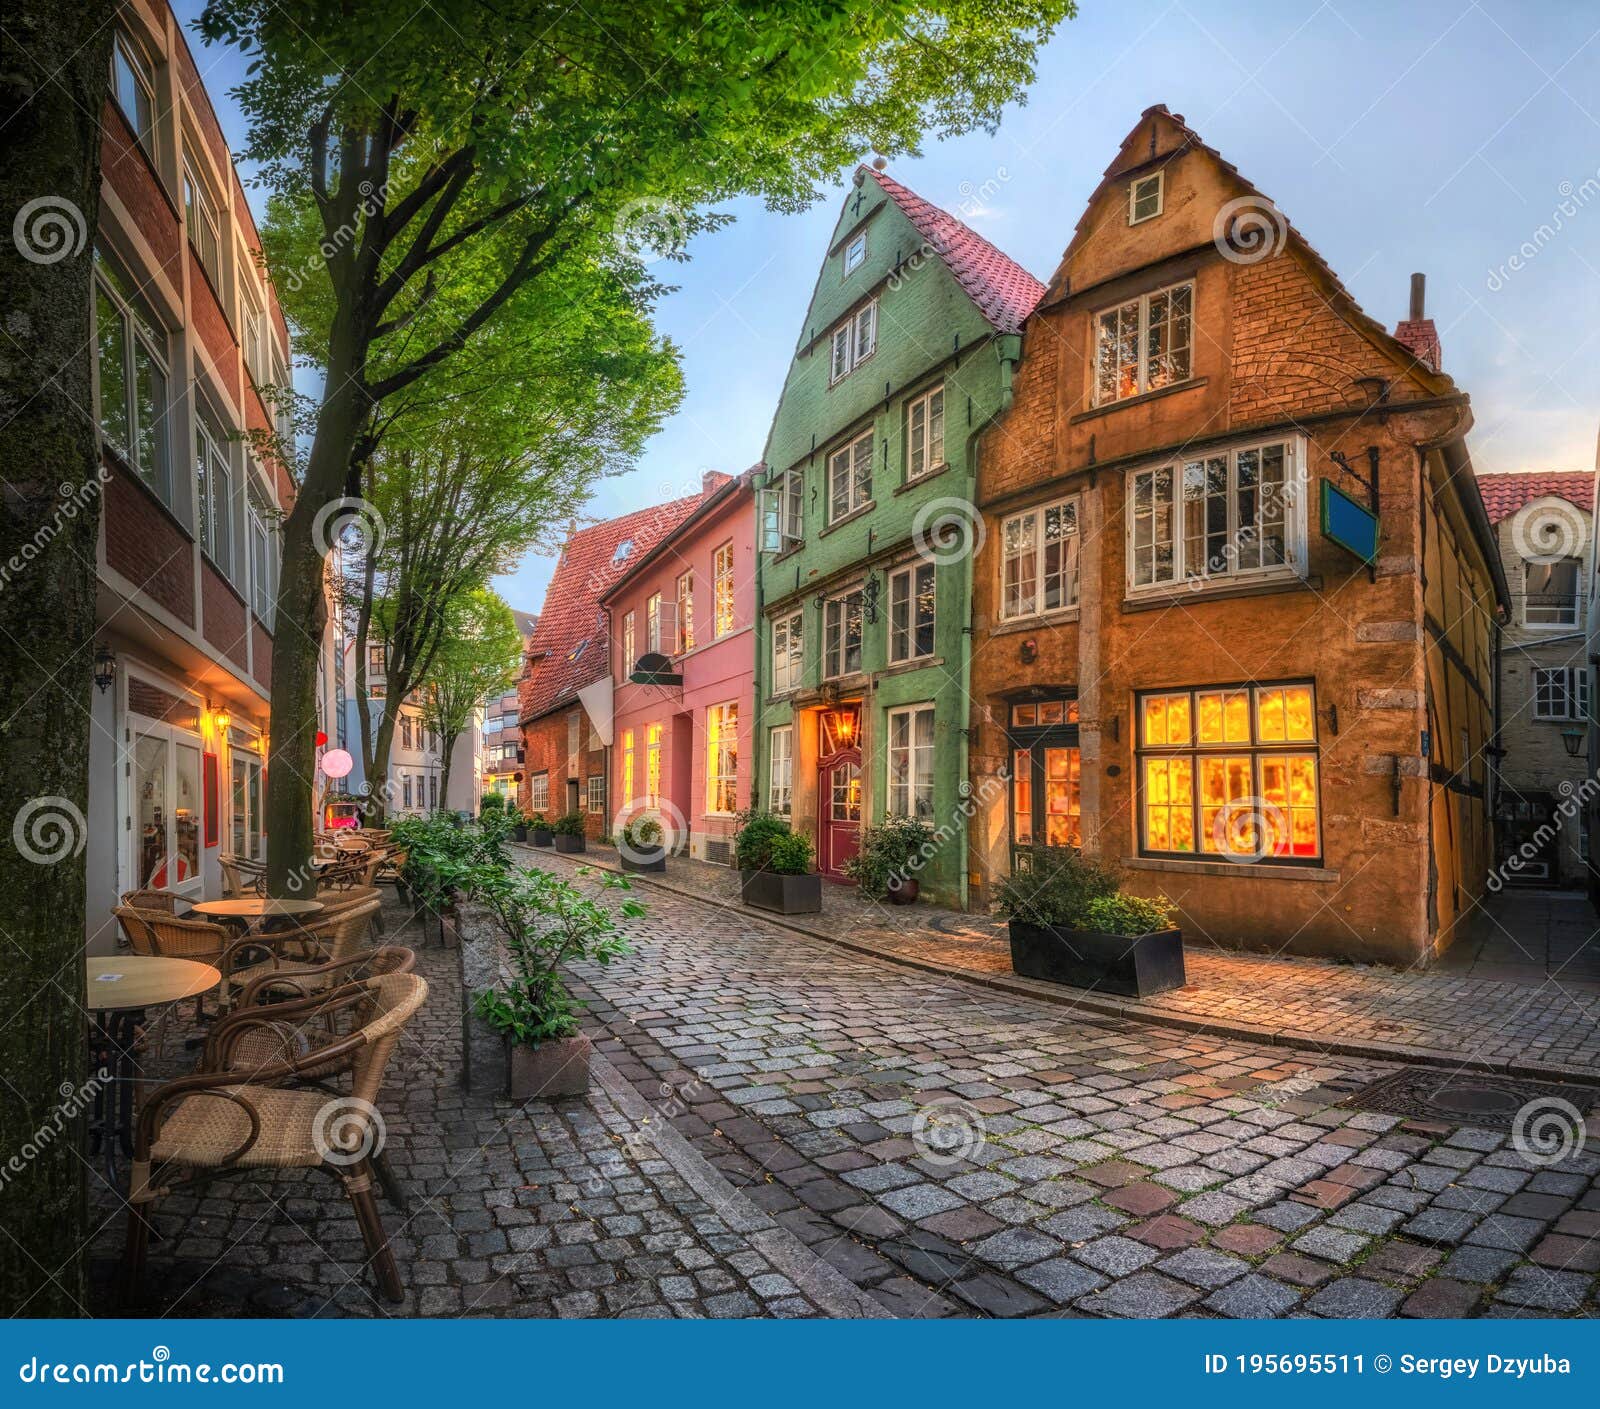 schnoor - picturesque historic district in bremen, germany